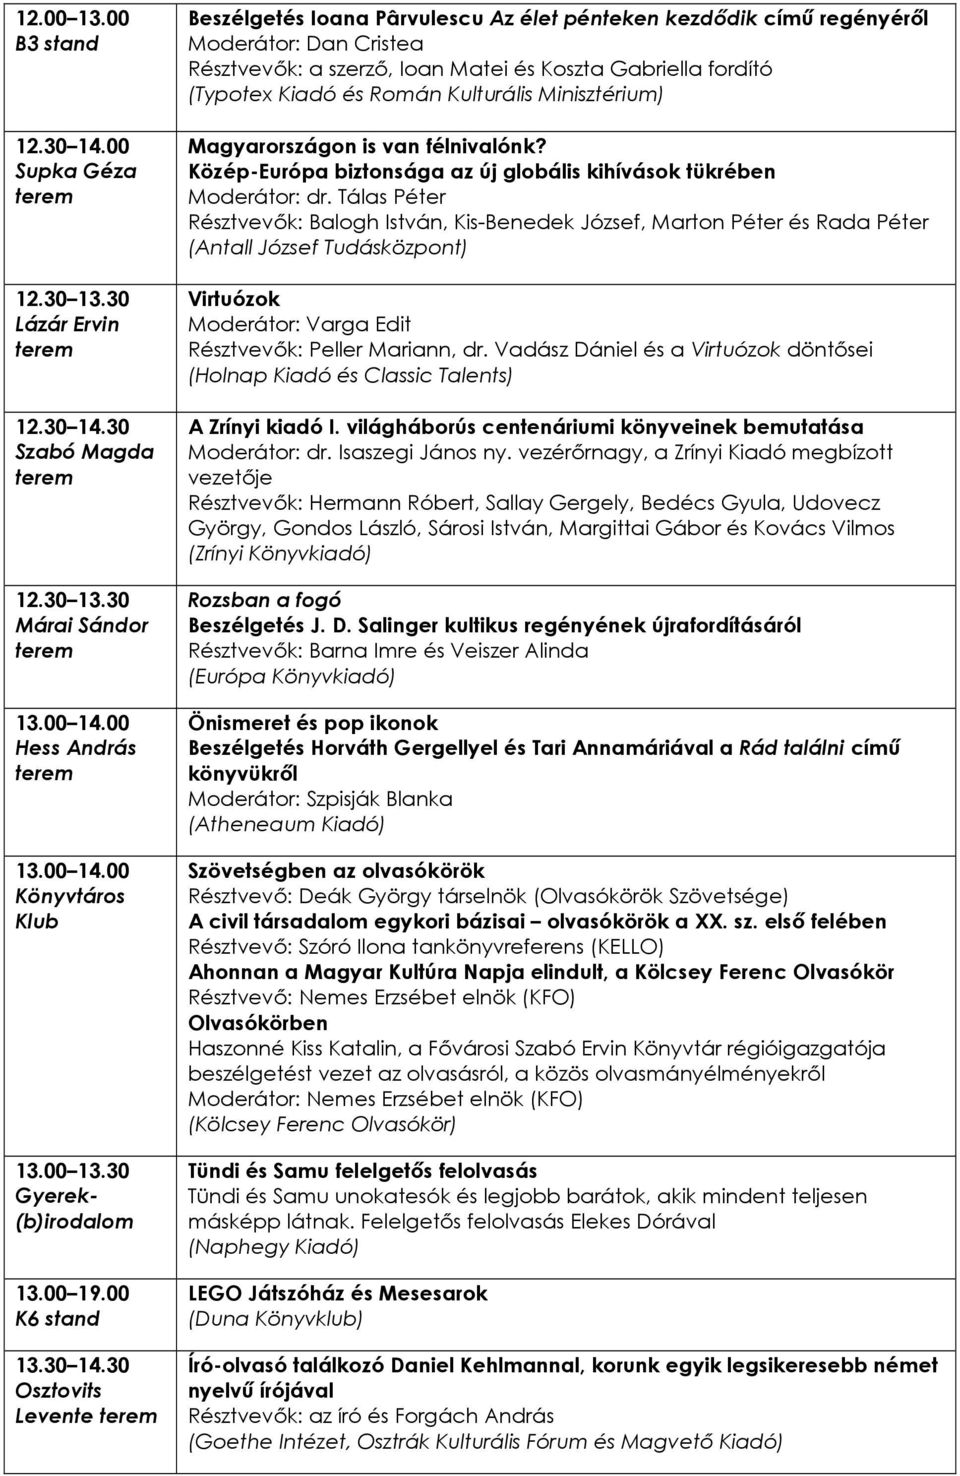 30 Szabó Magda 12.30 13.30 Könyvtáros Klub 13.00 13.30 13.00 19.00 K6 stand 13.30 14.